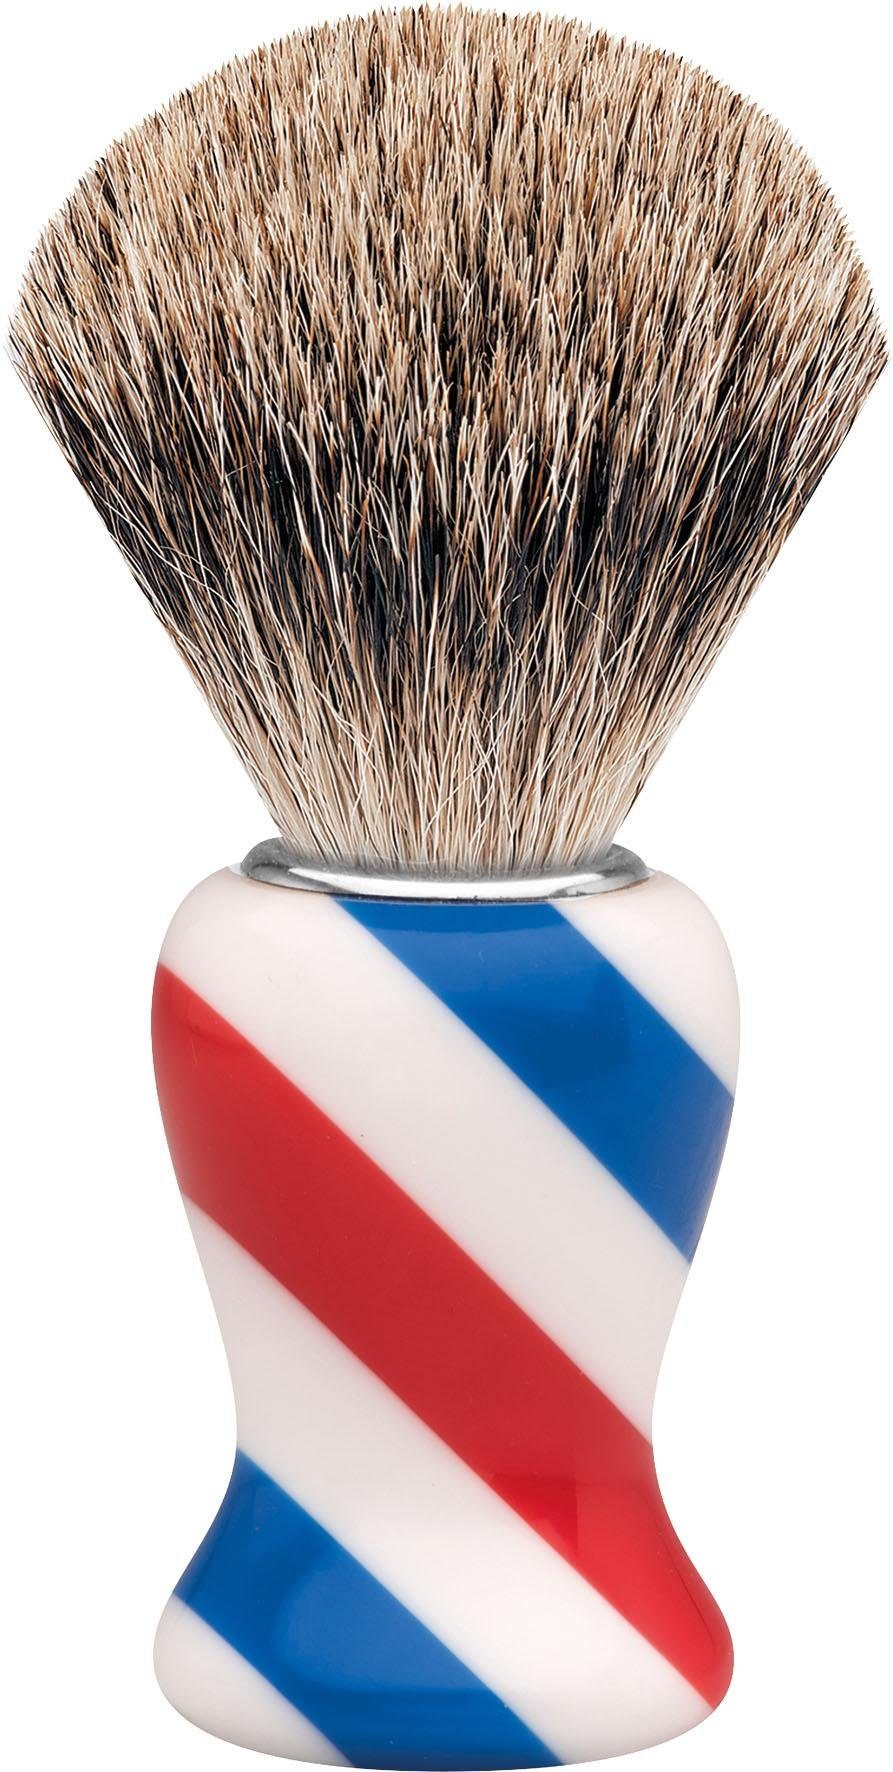 Barbershop Dachshaar, Design/Stripes ERBE Rasierpinsel M,